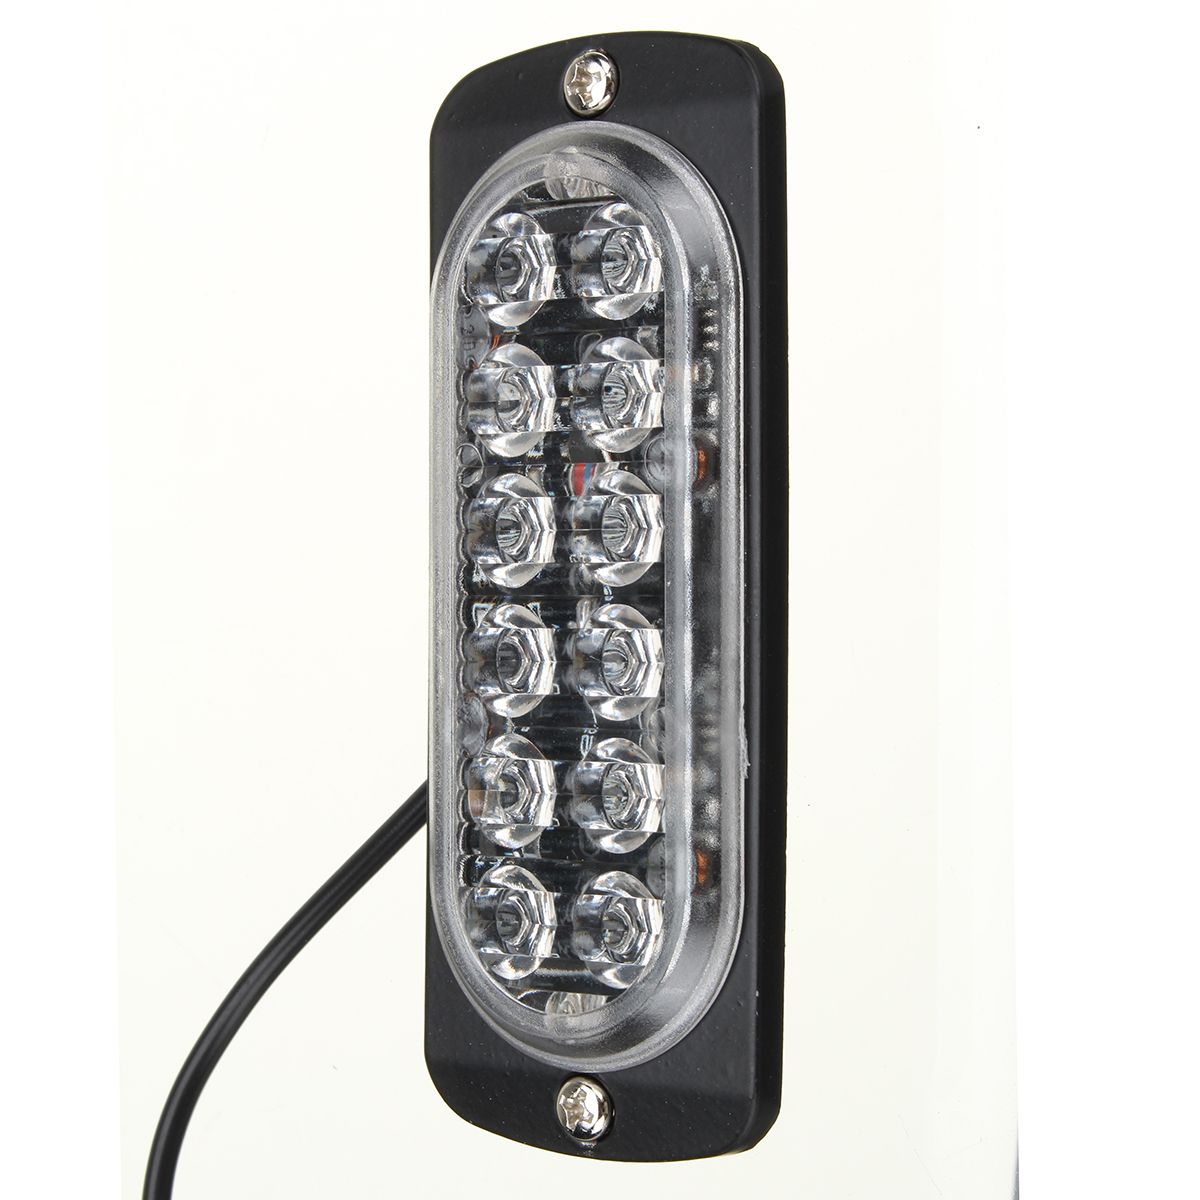 12-LED-Amber-Car-Emergency-Flashing-Light-vehicle-Strobe-Flash-Warning-Lamp-6500K-1224V-36W-1587504